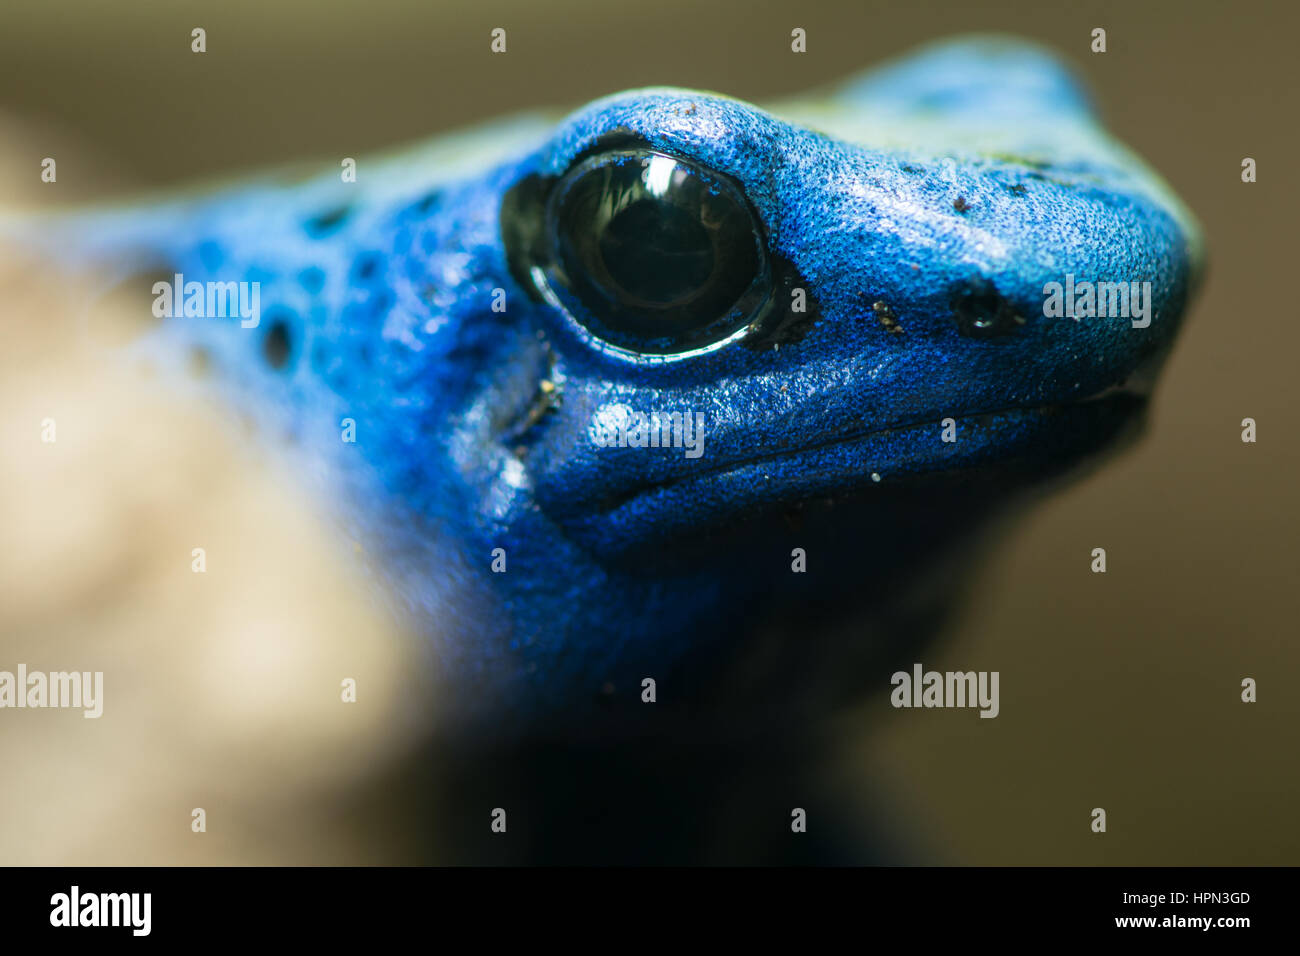 Blue poison dart frog (Dendrobates tinctorius azureus). Chef de l'aka amphibiens blue poison arrow frog, originaire de Suriname, au sein de la famille des Dendrobatidae Banque D'Images